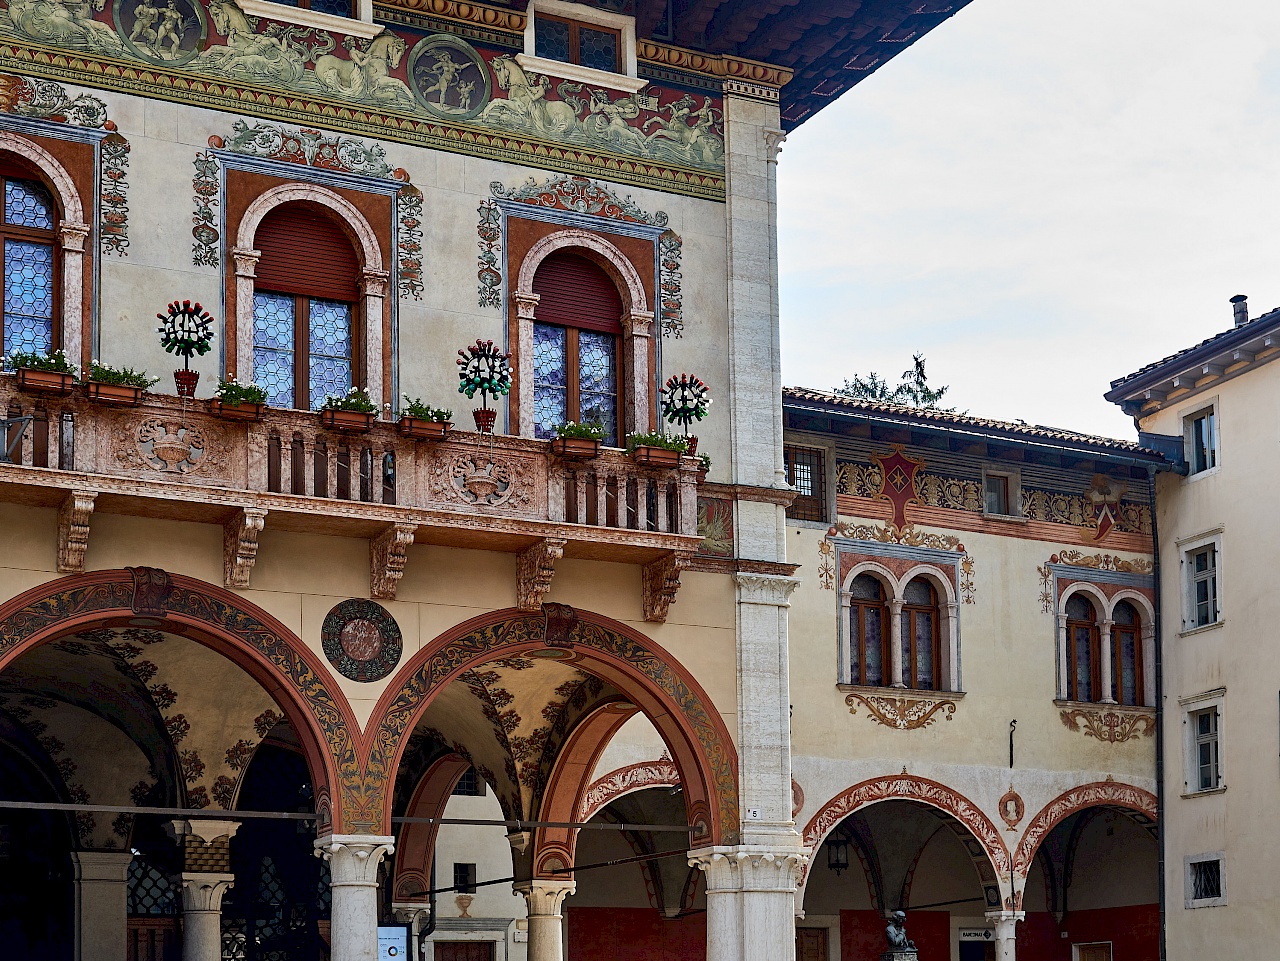 Die Fassade des Palazzo del Ben-Conti d’Arco in Rovereto